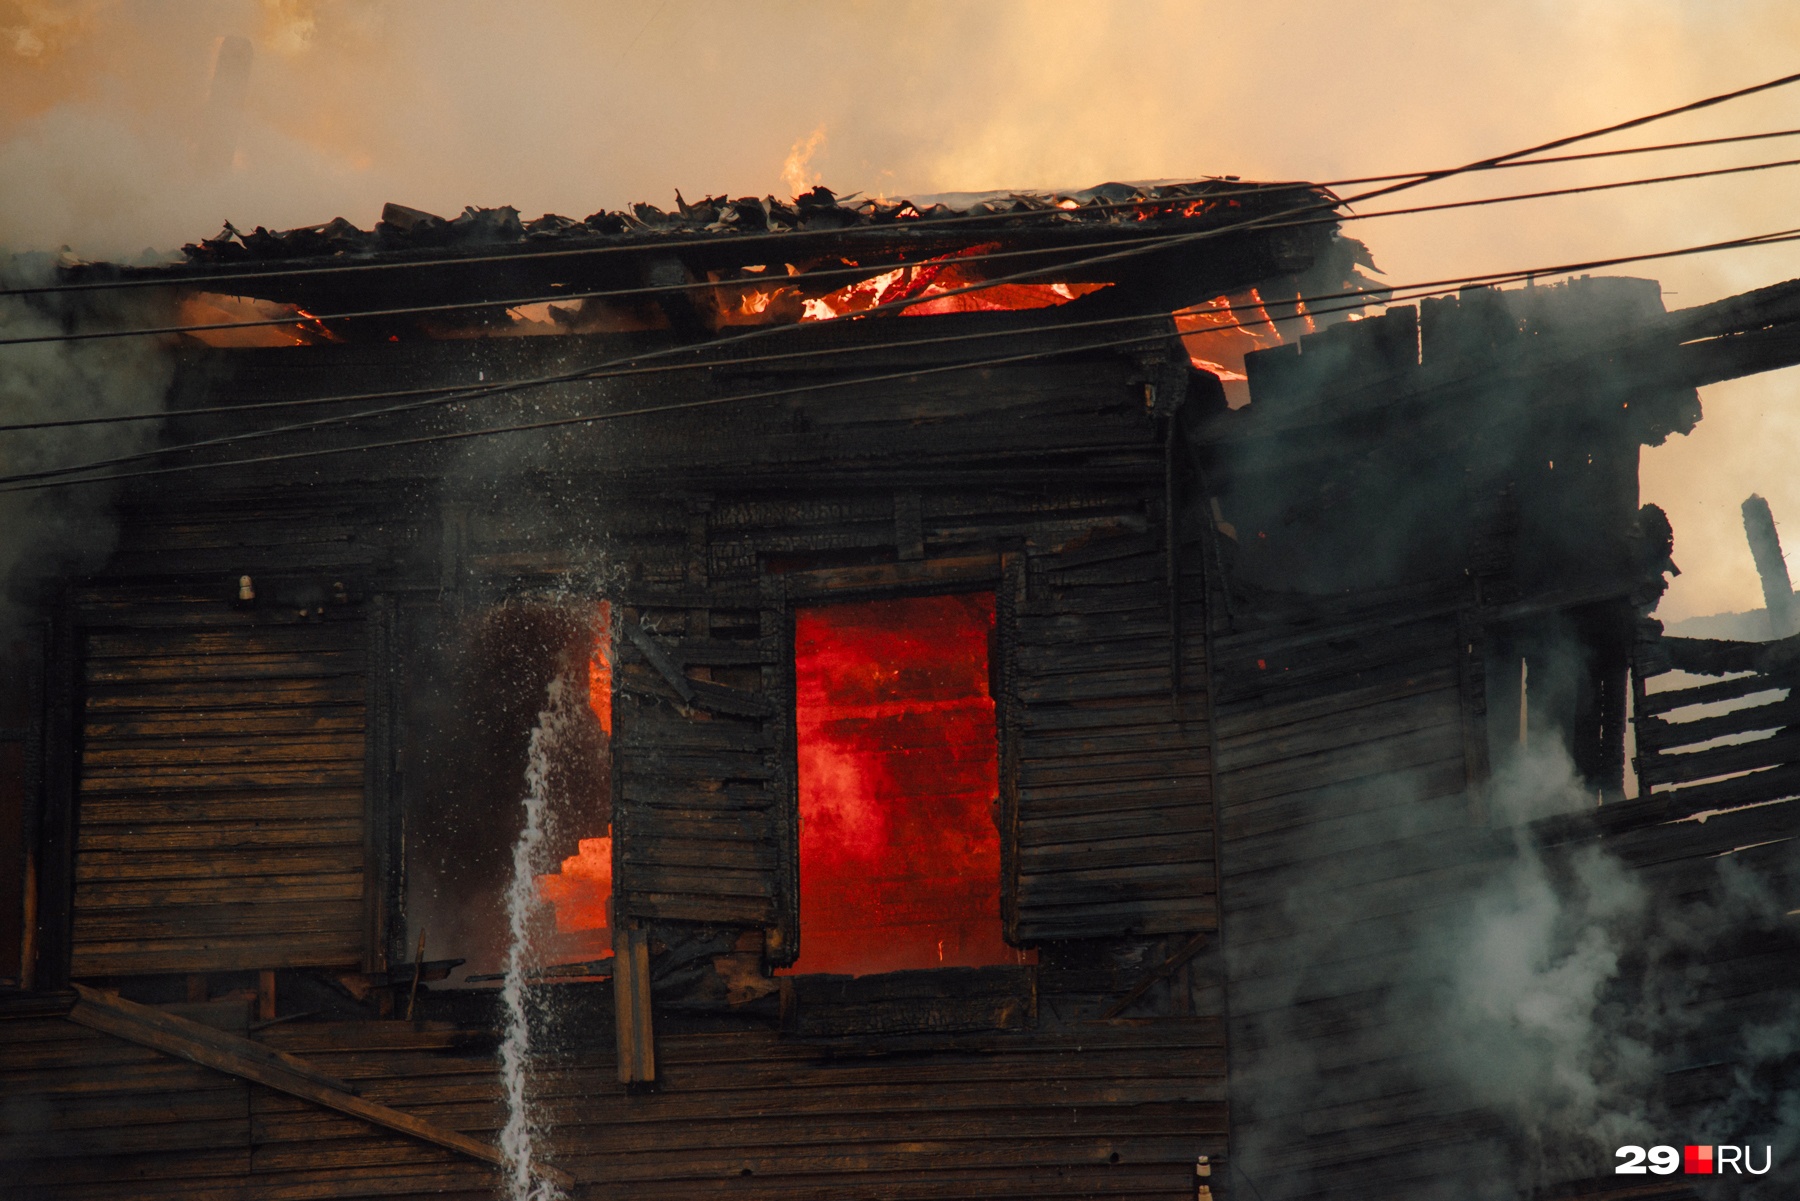 Сгорал почти до тла. Поджег дом. Сожженный дом. Сгорел дом с бассейном. Горящее здание в Кемерово.